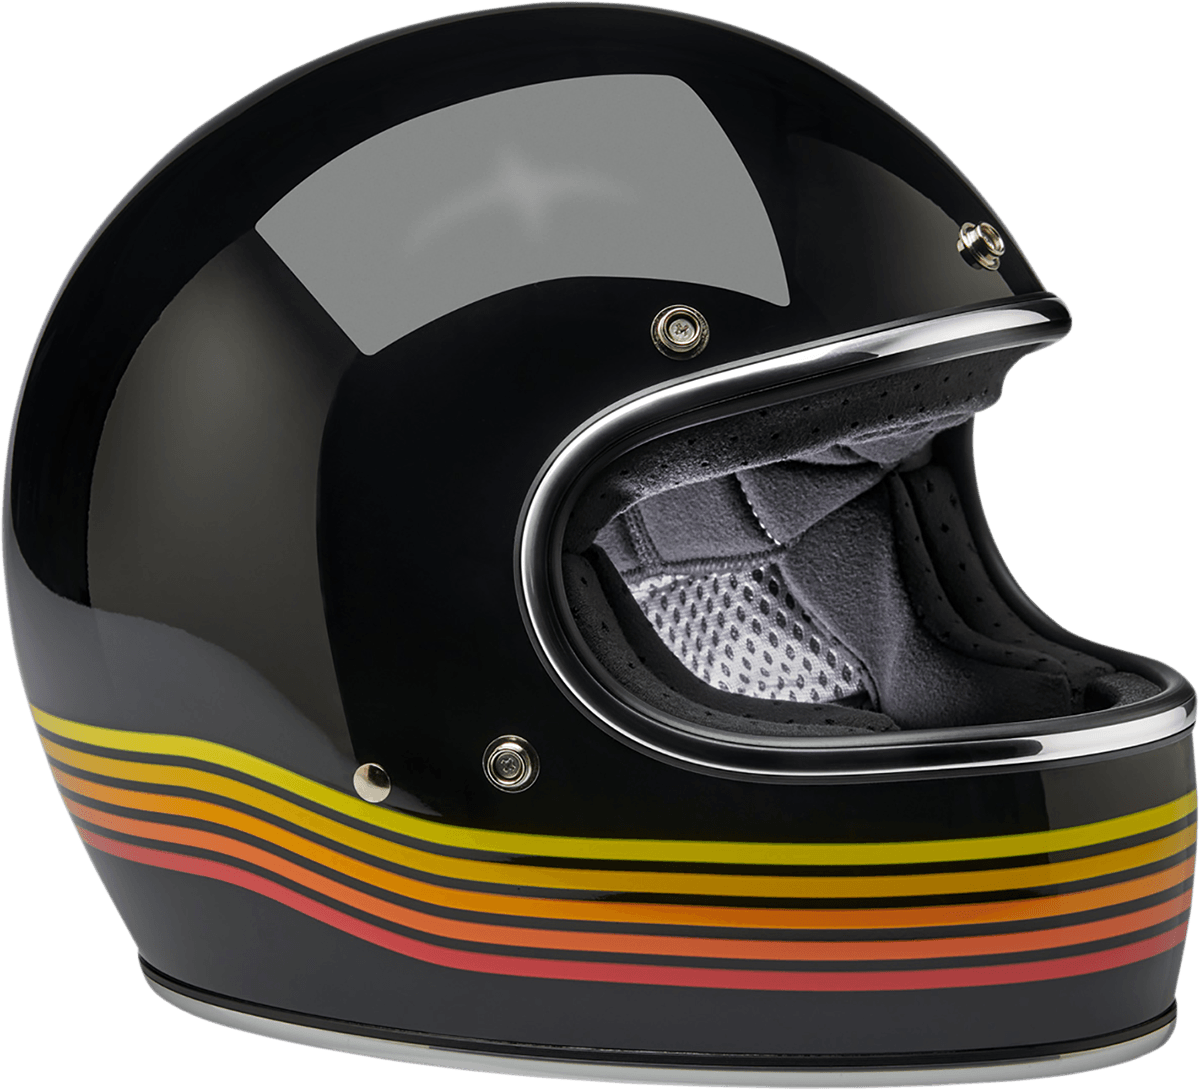 BILTWELL-Gringo Helmet / Spectrum-Helmet-MetalCore Harley Supply